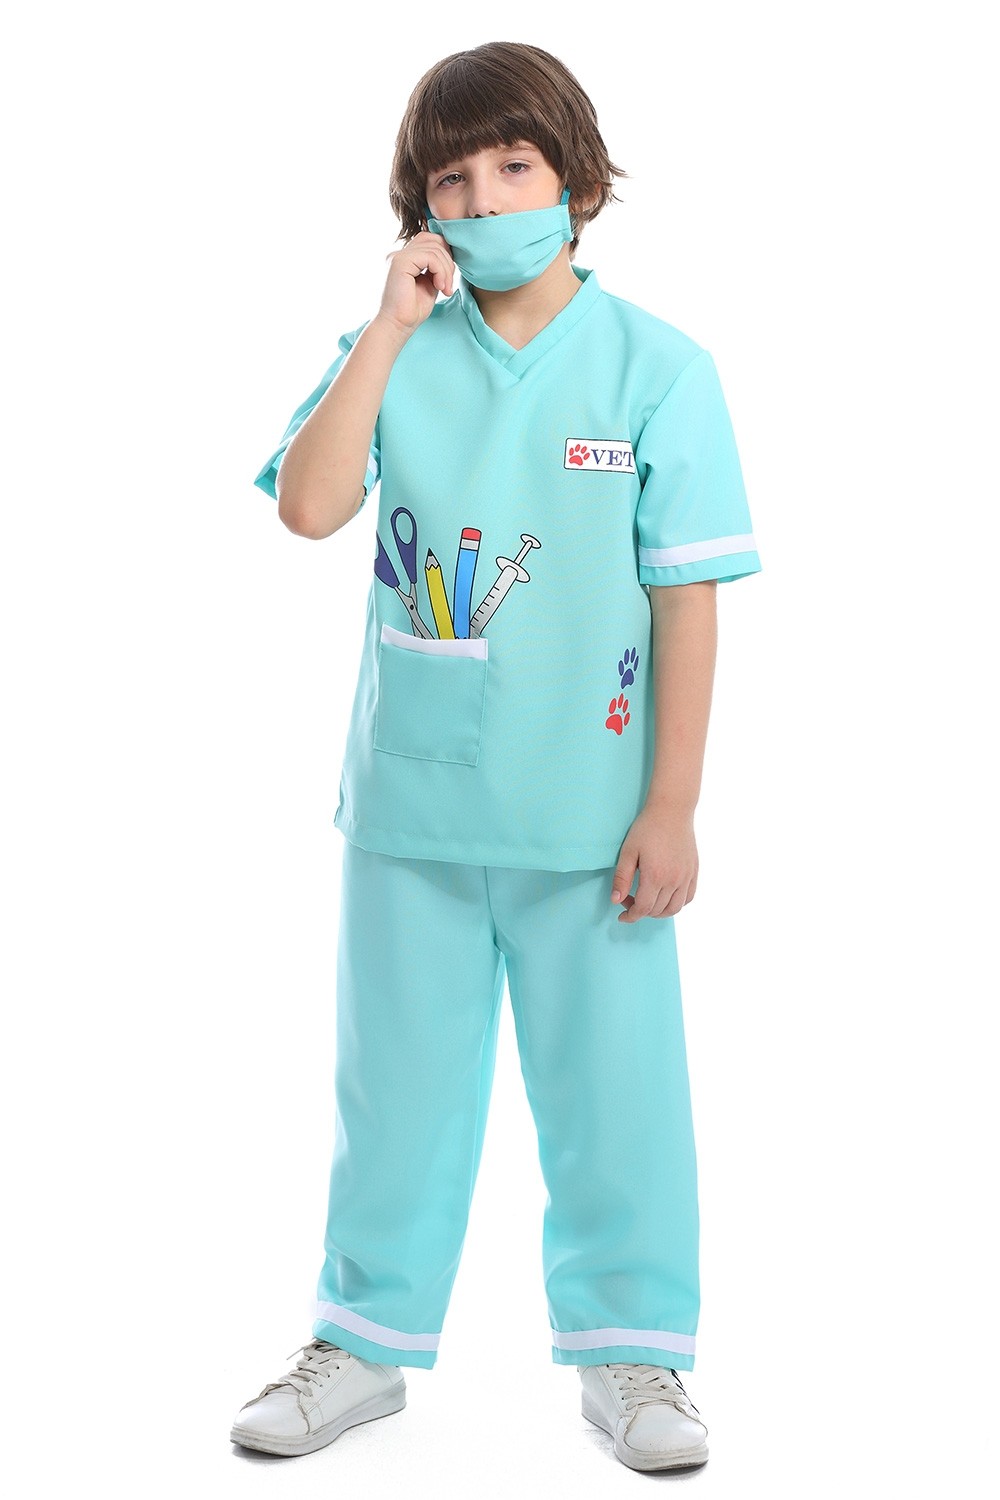 SALE Kids Nurse Uniform Girls Fancy Dress Costume Party Outfit Booke Week 